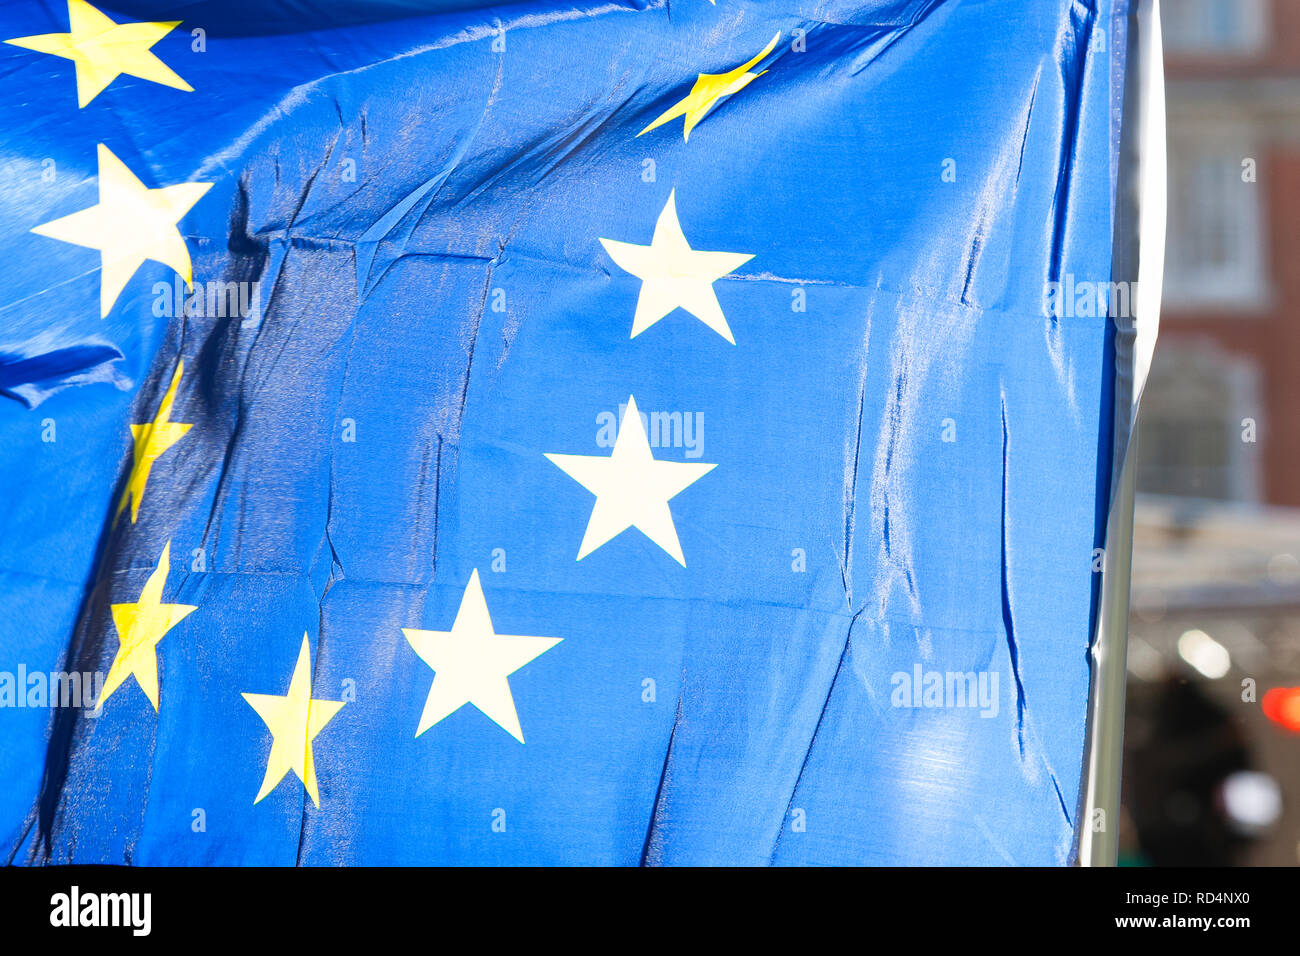 Londres, Royaume-Uni. 17 Jan, 2019. Londres, Royaume-Uni. Drapeaux de l'UE voler à College Green en face du Parlement. Crédit : Dave Stevenson/Alamy Live News Banque D'Images